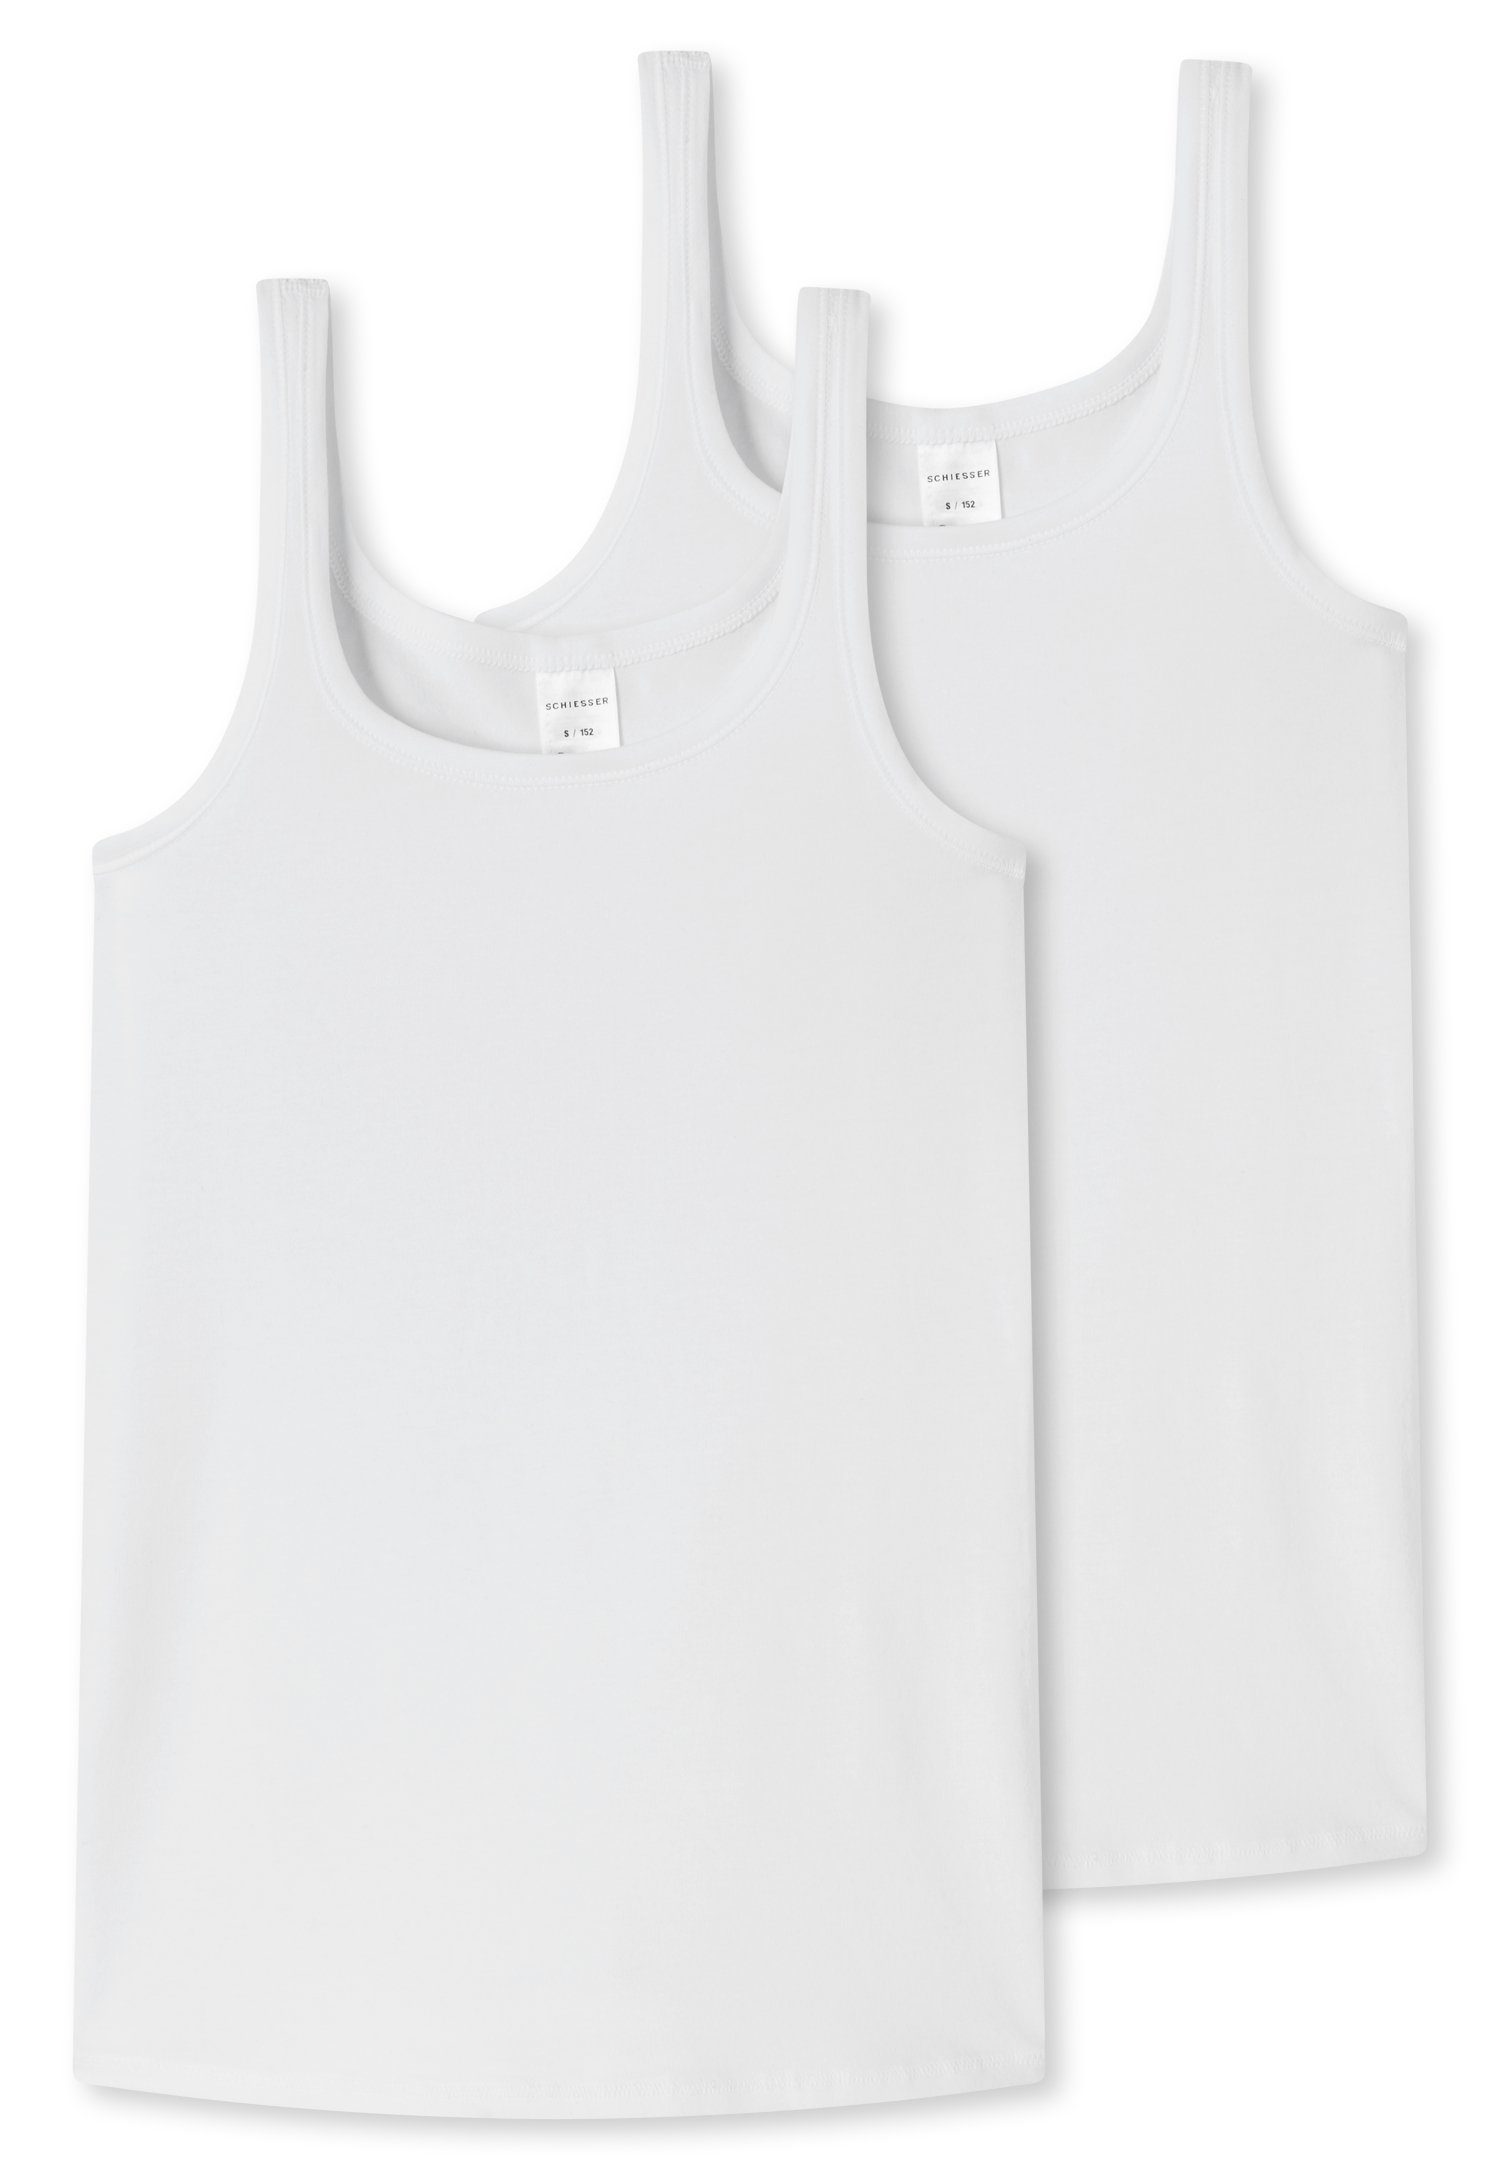 Schiesser Unterhemd (2er-Pack) mit breiten Trägern weiß